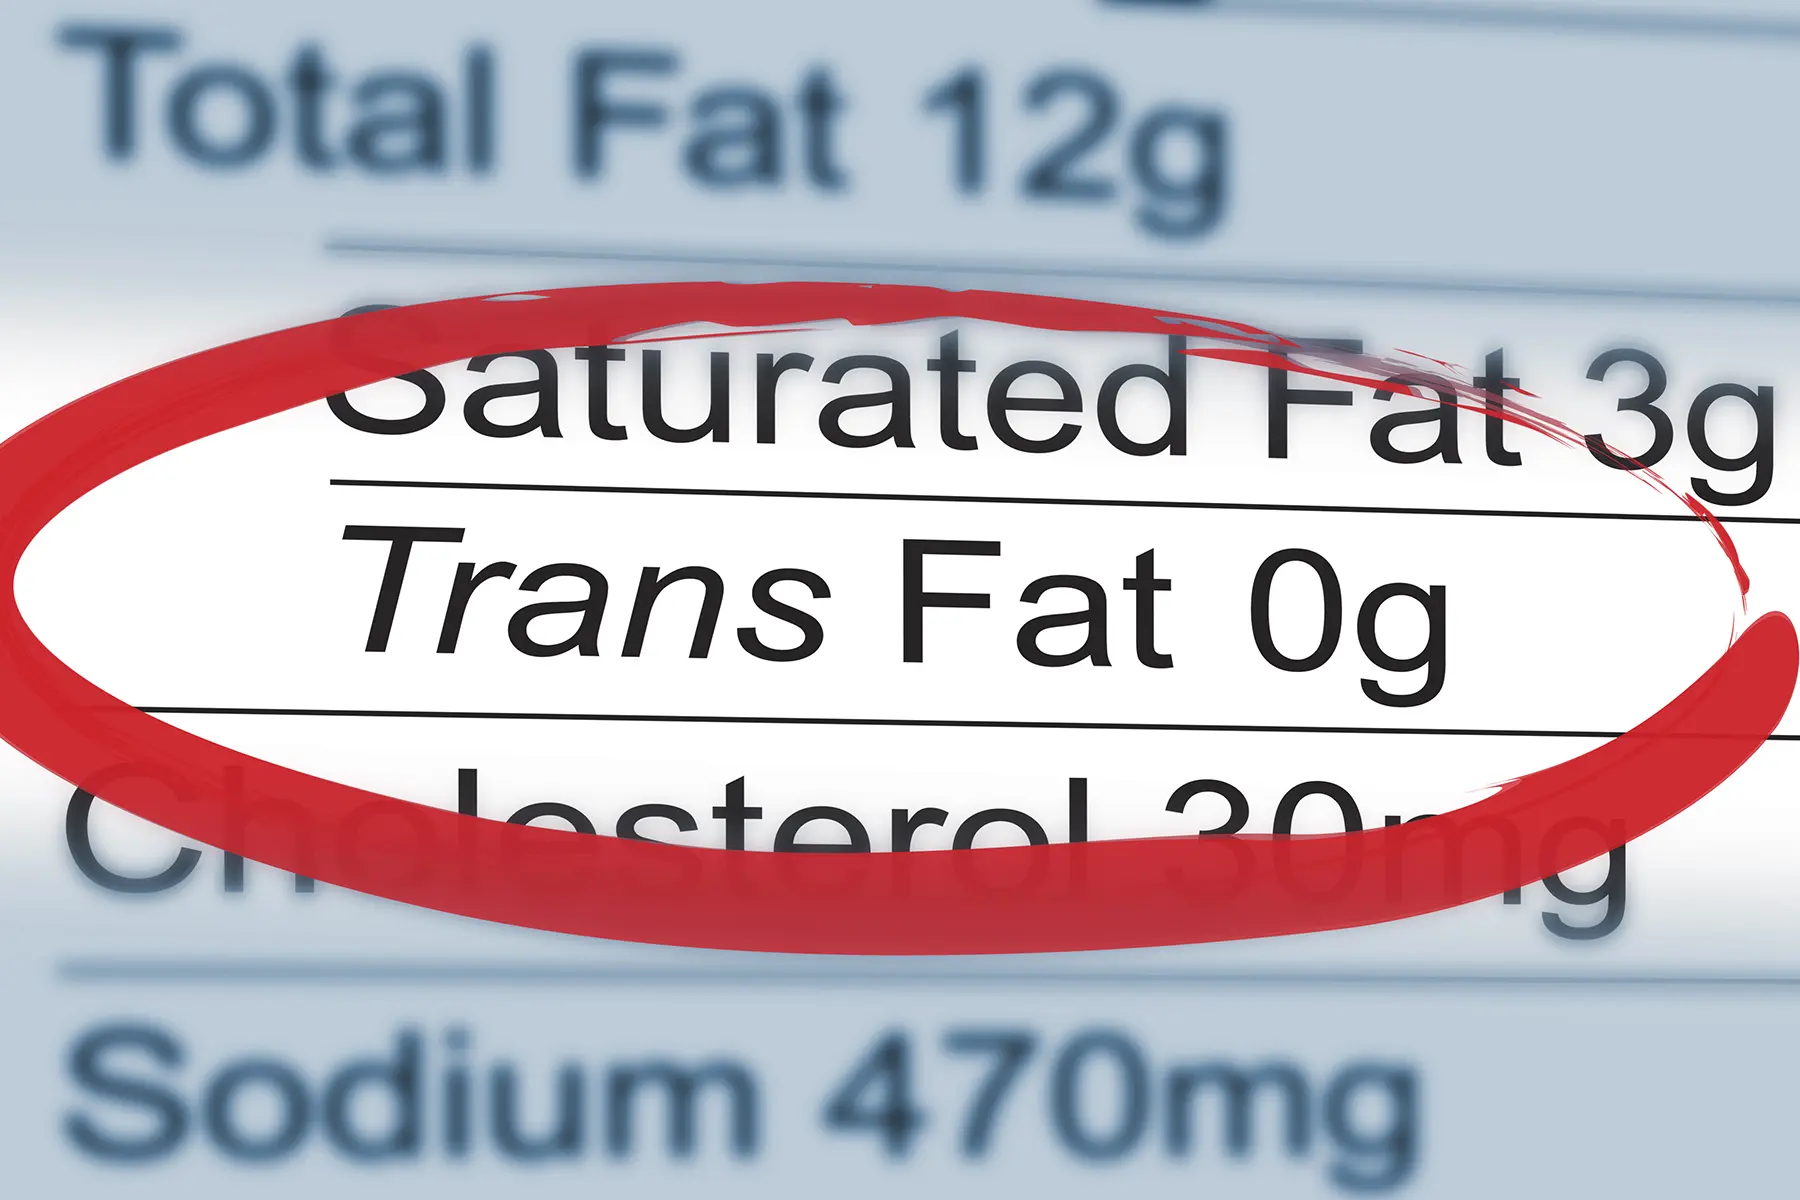 Trans fat